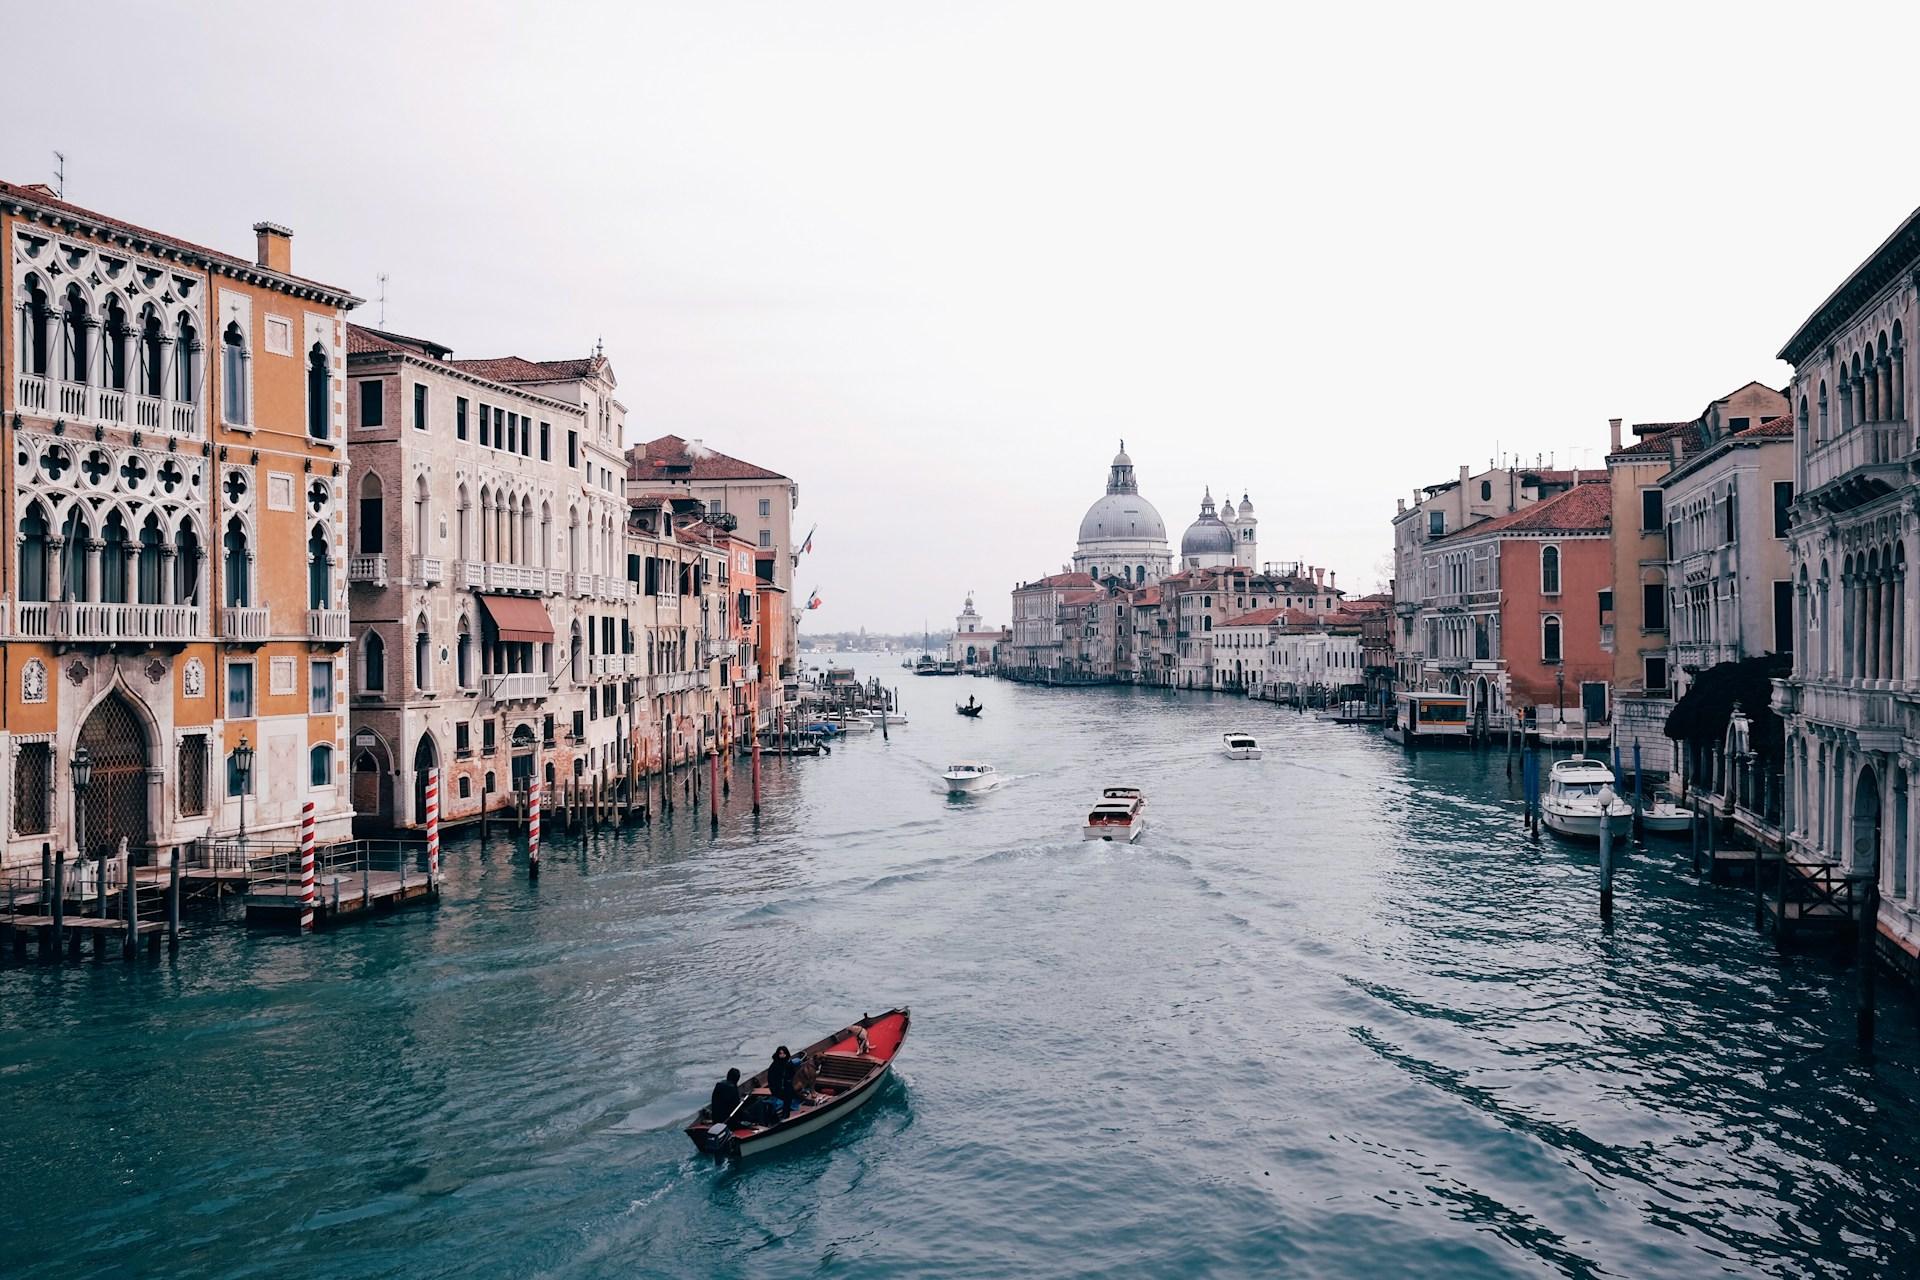 Venise : Curiosités, lieux insolites et traditions locales